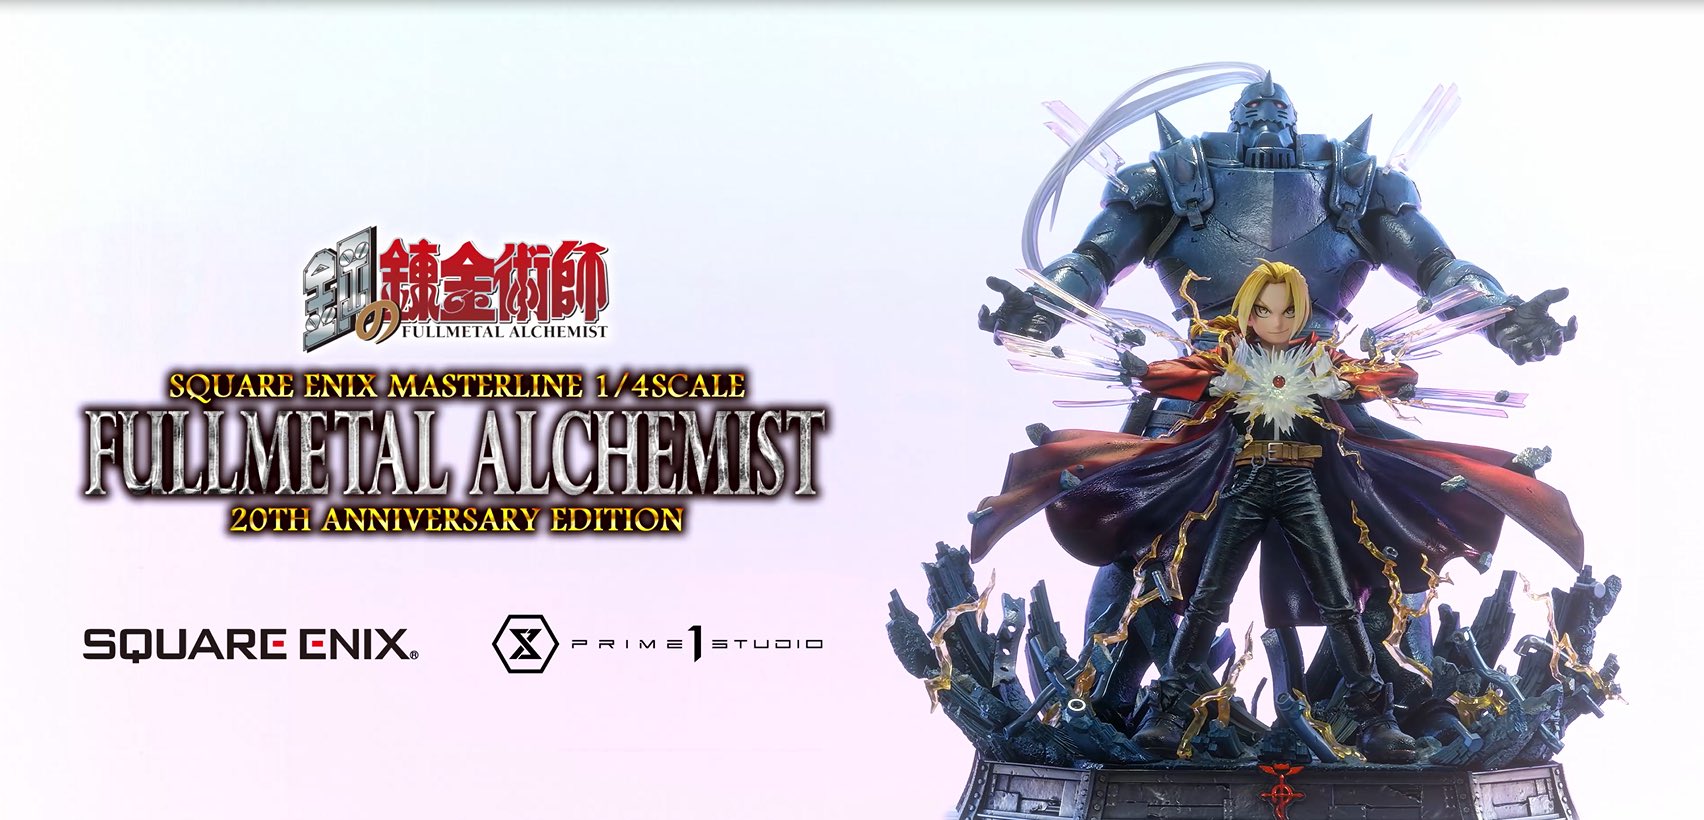 Fullmetal Alchemist - Prime Video